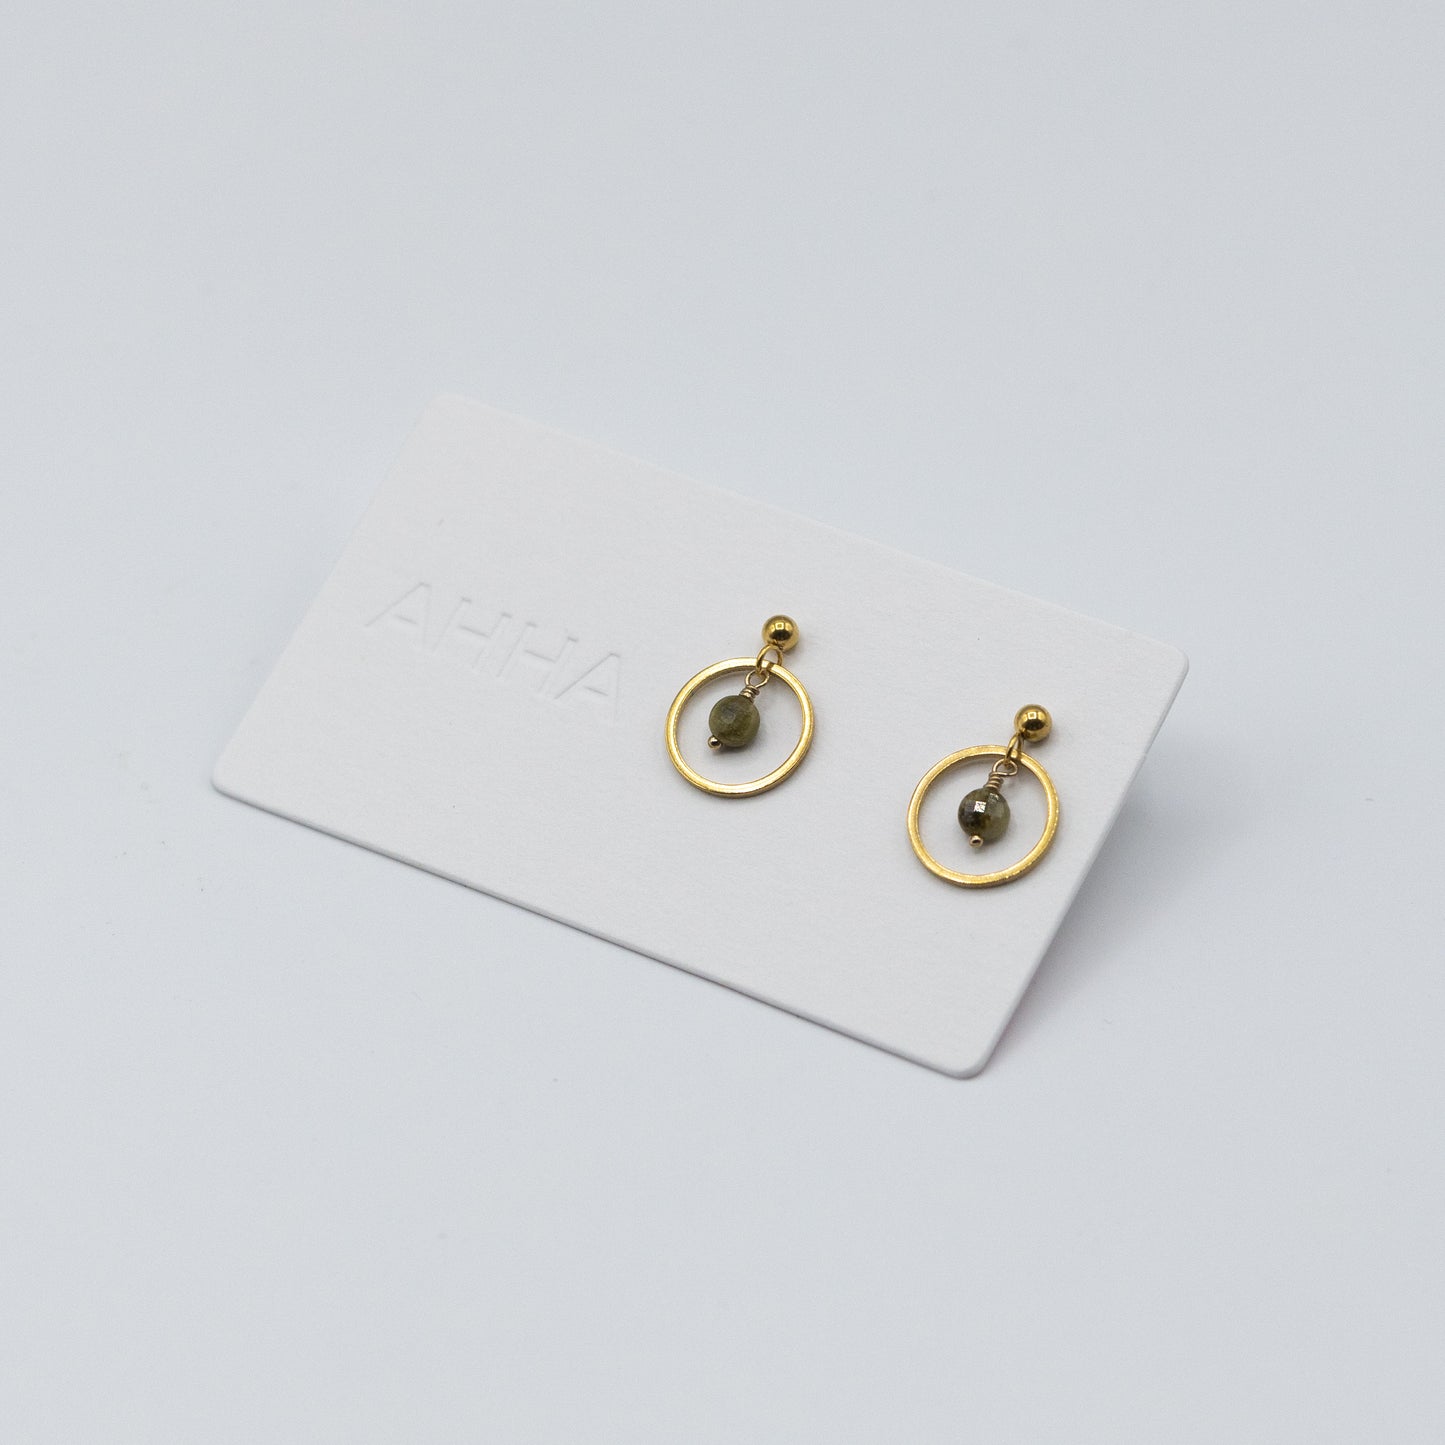 Birthstone Stud Earrings With Natural Gemstones